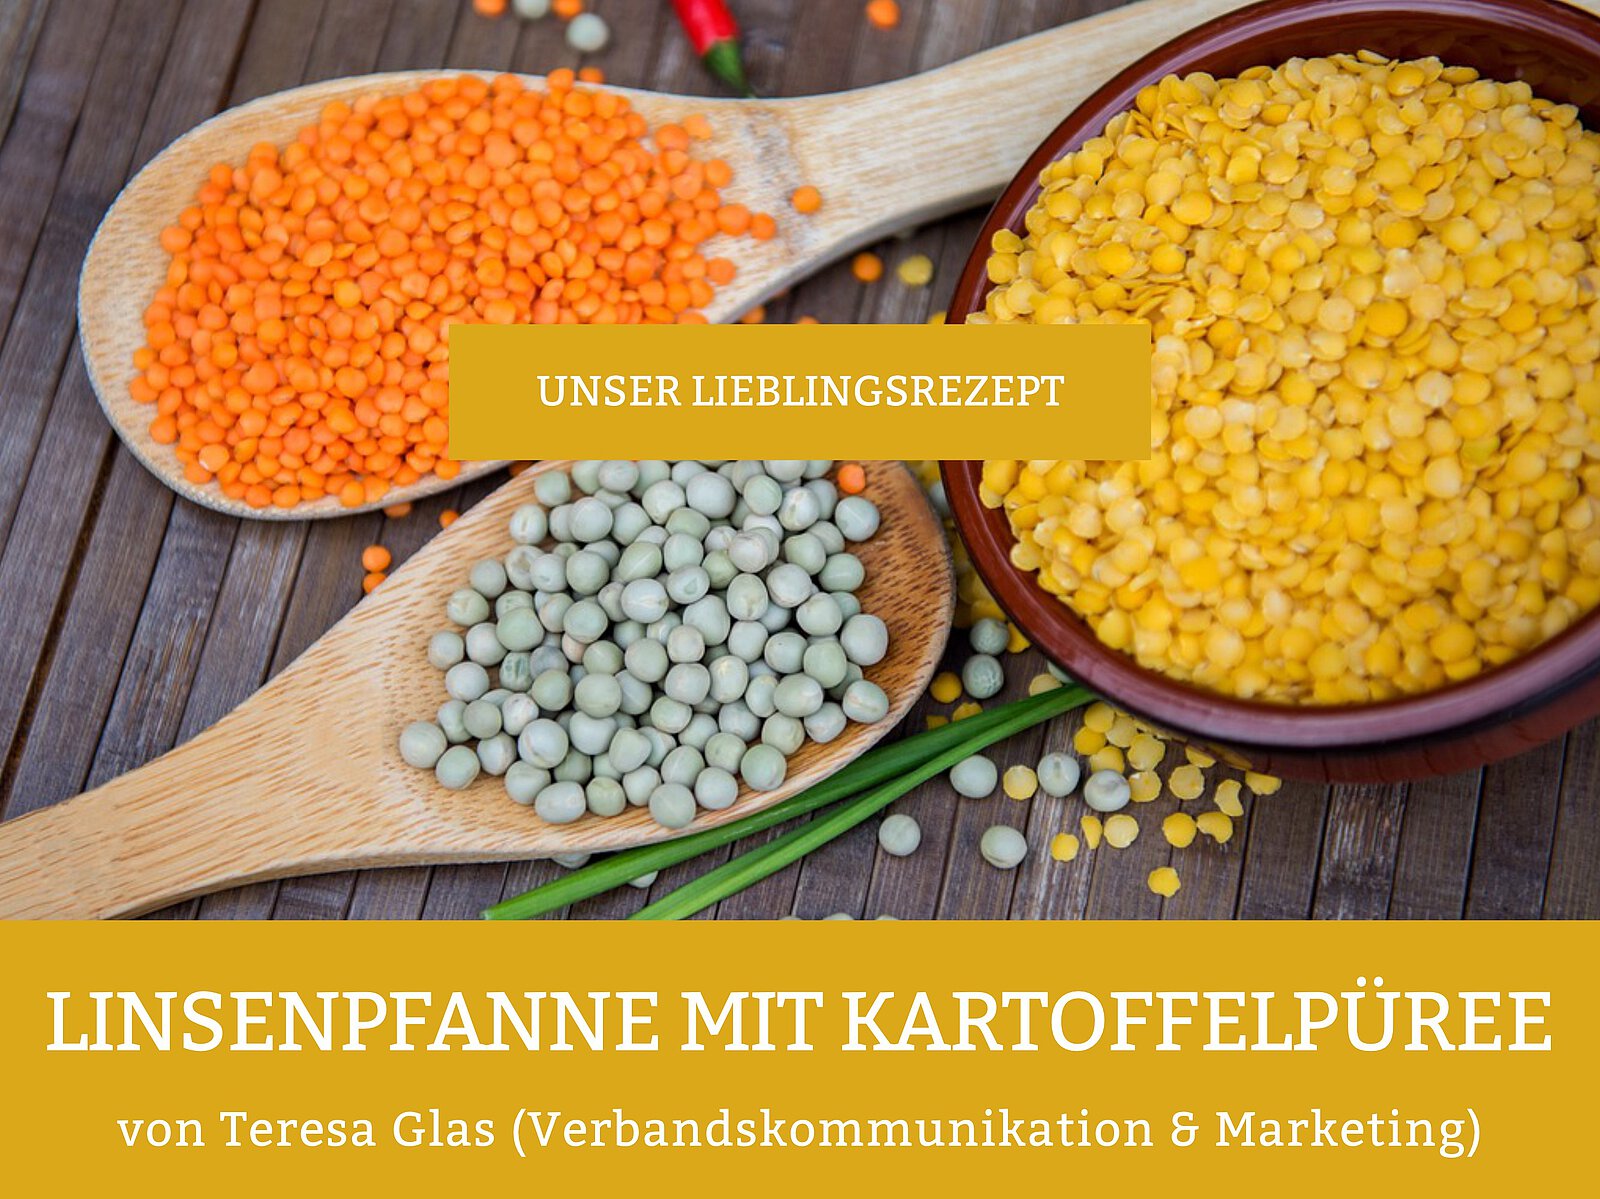 Bunte Linsen, darauf steht "Unser Lieblingsrezept" und "Linsenpfanne mit Kartoffelpüree von Teresa Glas (Verbandskommunikation & Marketing)"